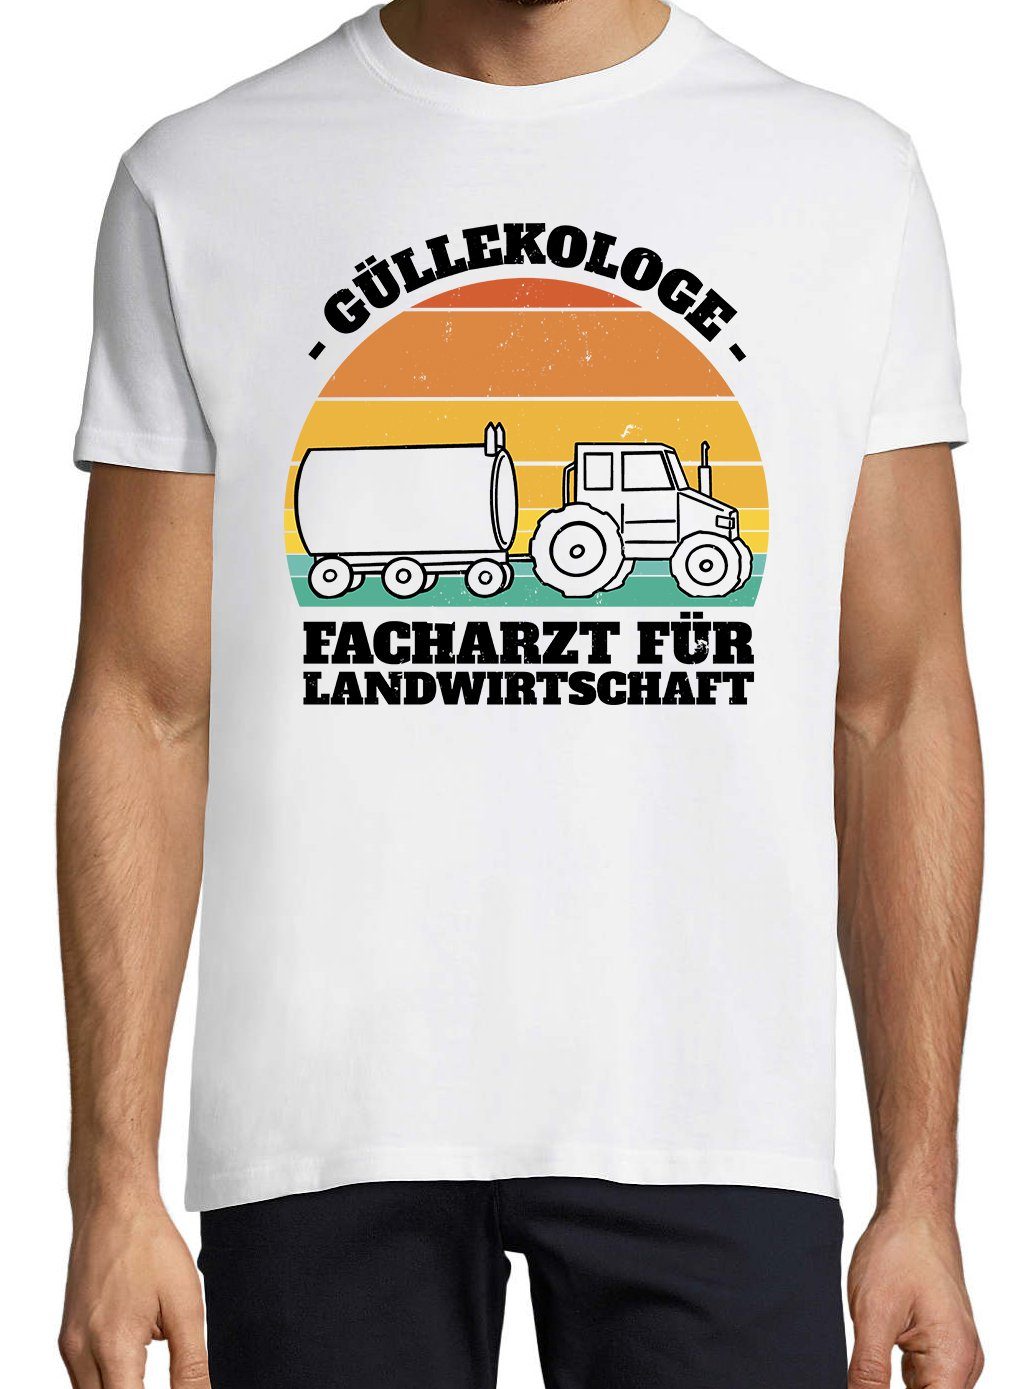 lustigem Designz Güllekologe Weiß Herren mit Shirt Farmer Frontprint T-Shirt Youth